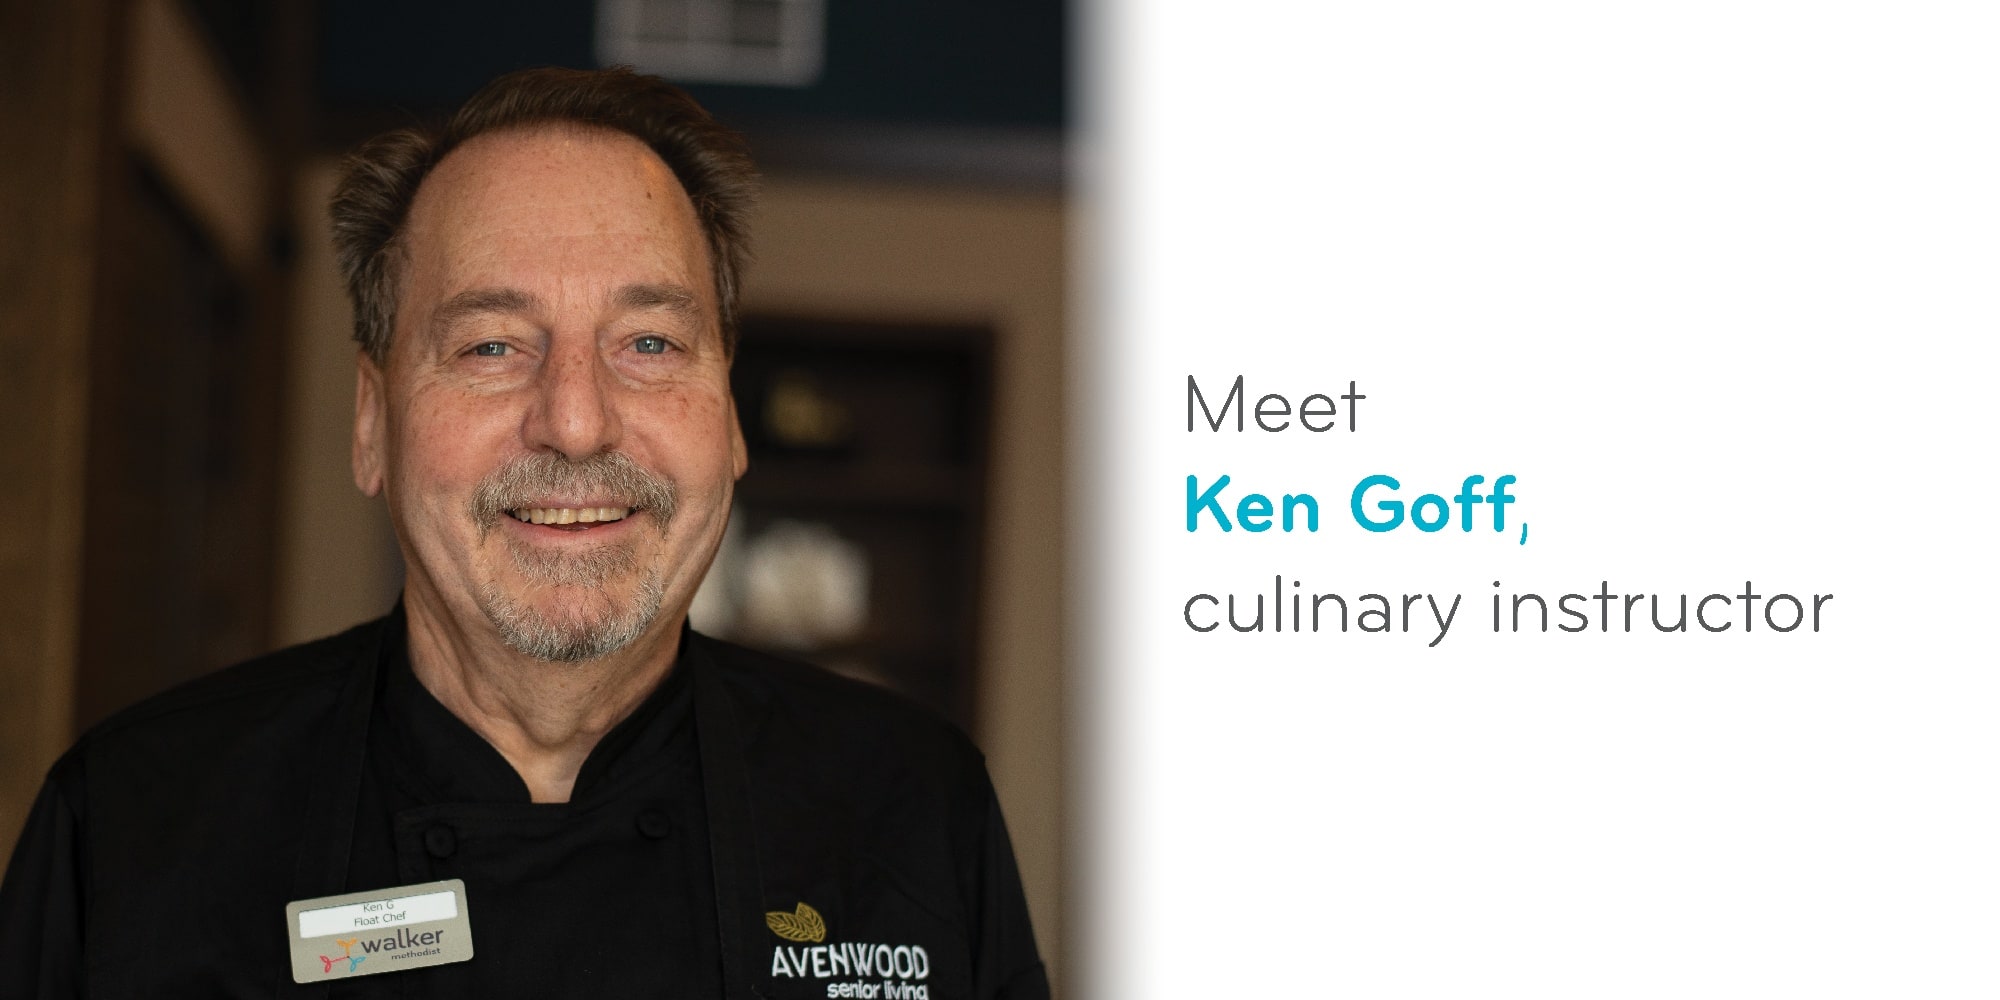 Meet Ken Goff, culinary instructor